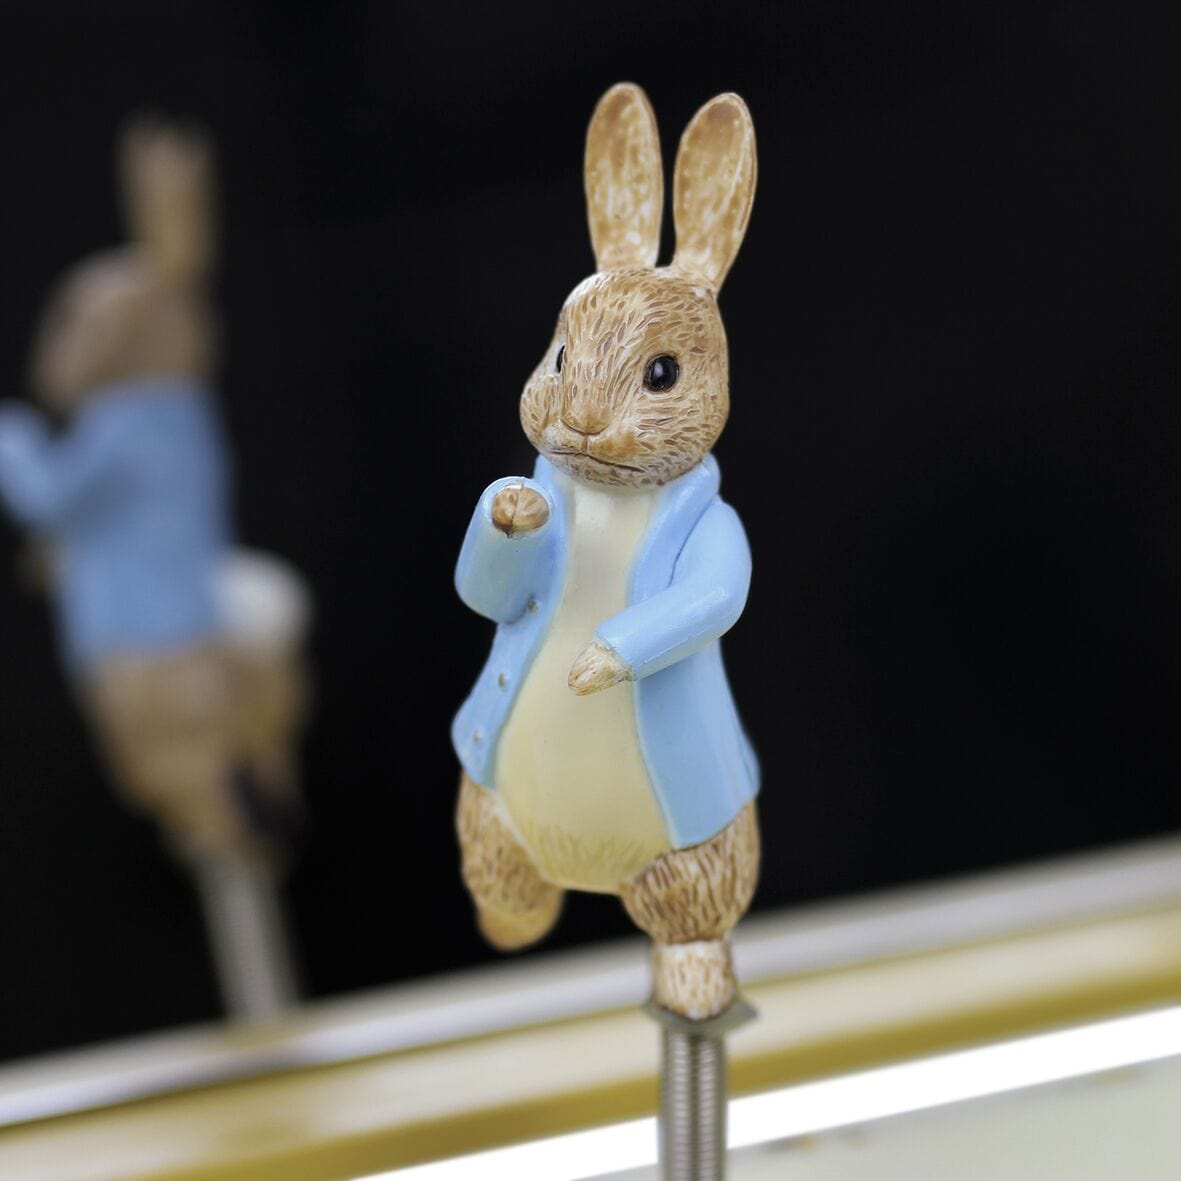 Musical Jewelry Box Peter Rabbit